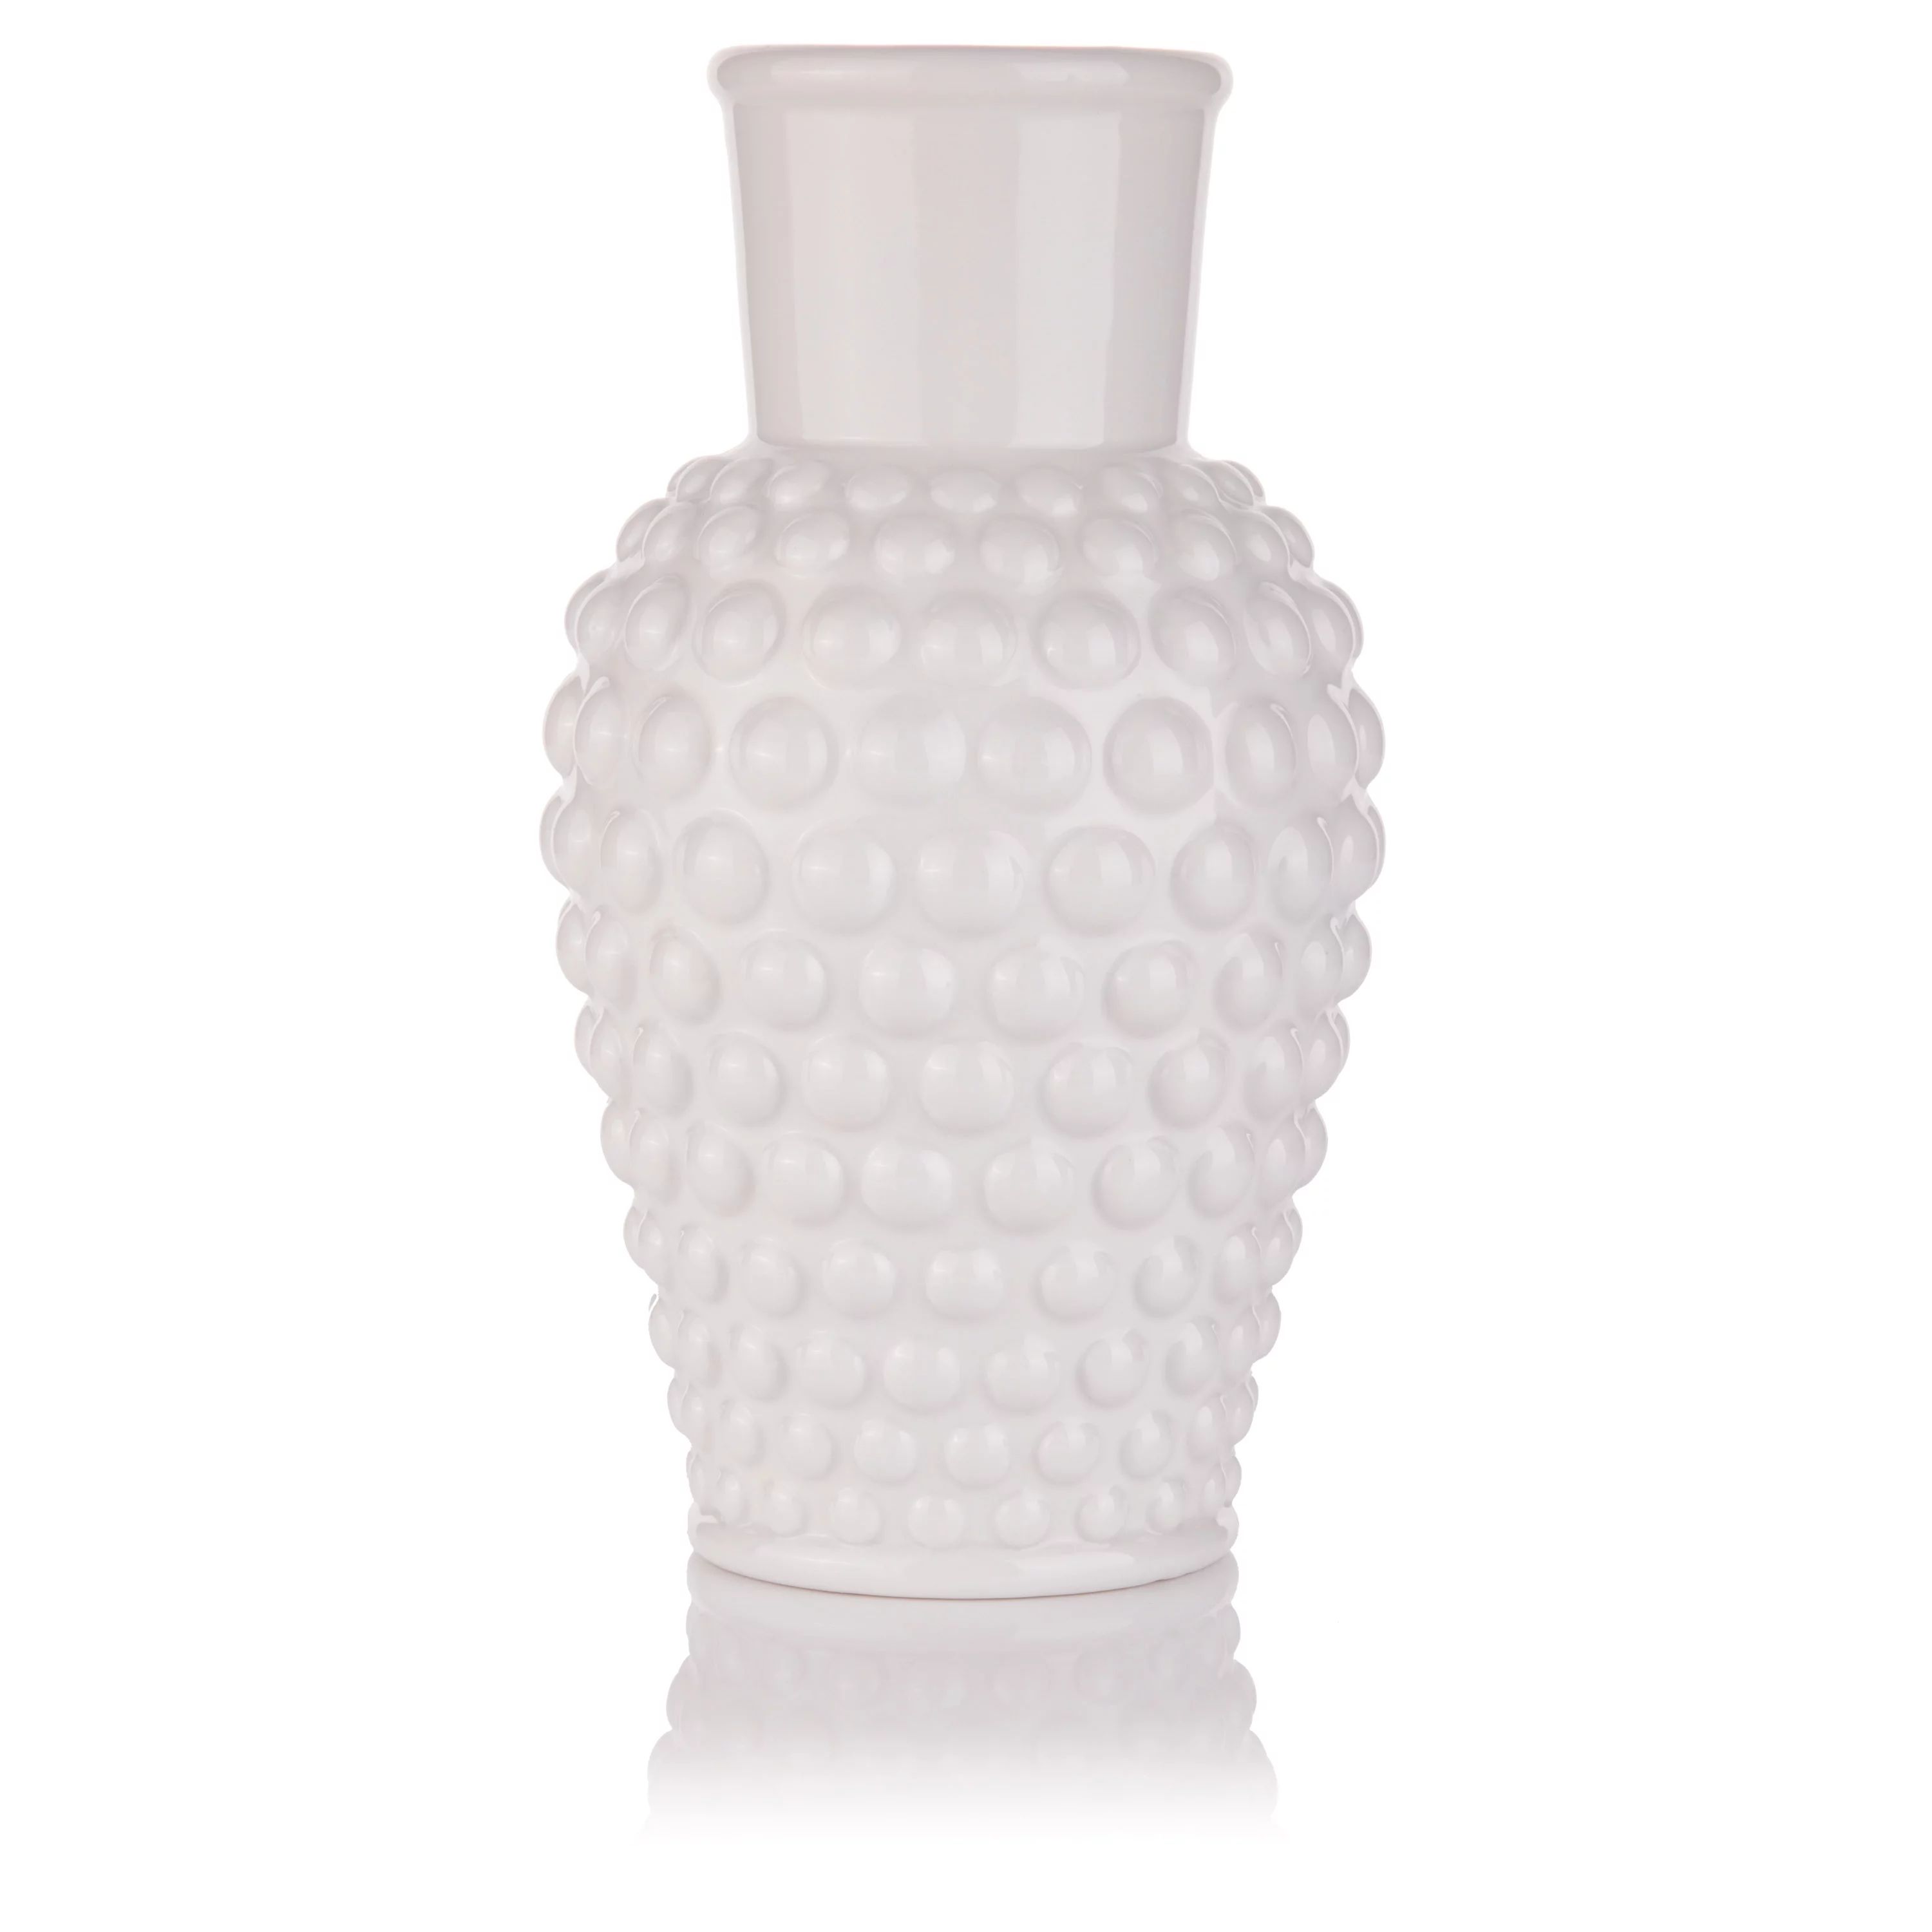 My Texas House Ceramic White Hobnail Vase,  Large | Walmart (US)